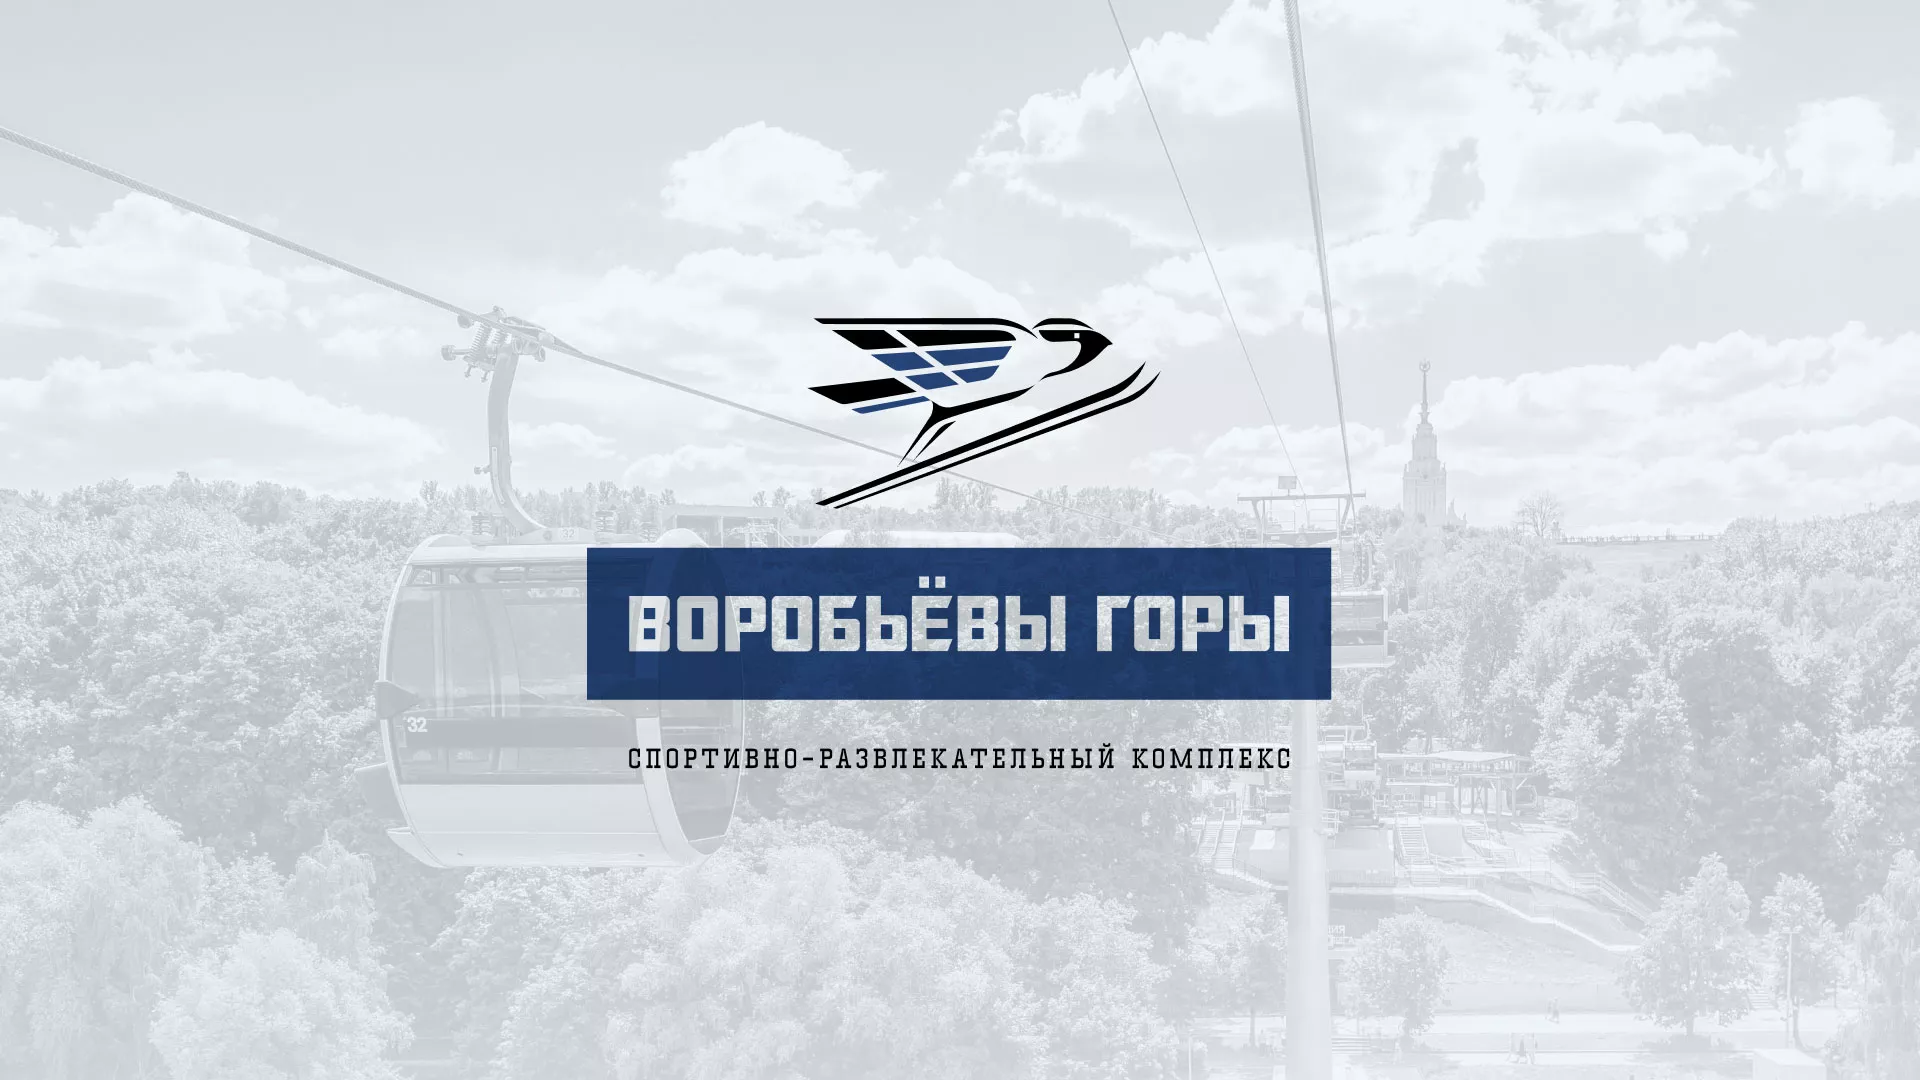 Разработка сайта в Краснотурьинске для спортивно-развлекательного комплекса «Воробьёвы горы»